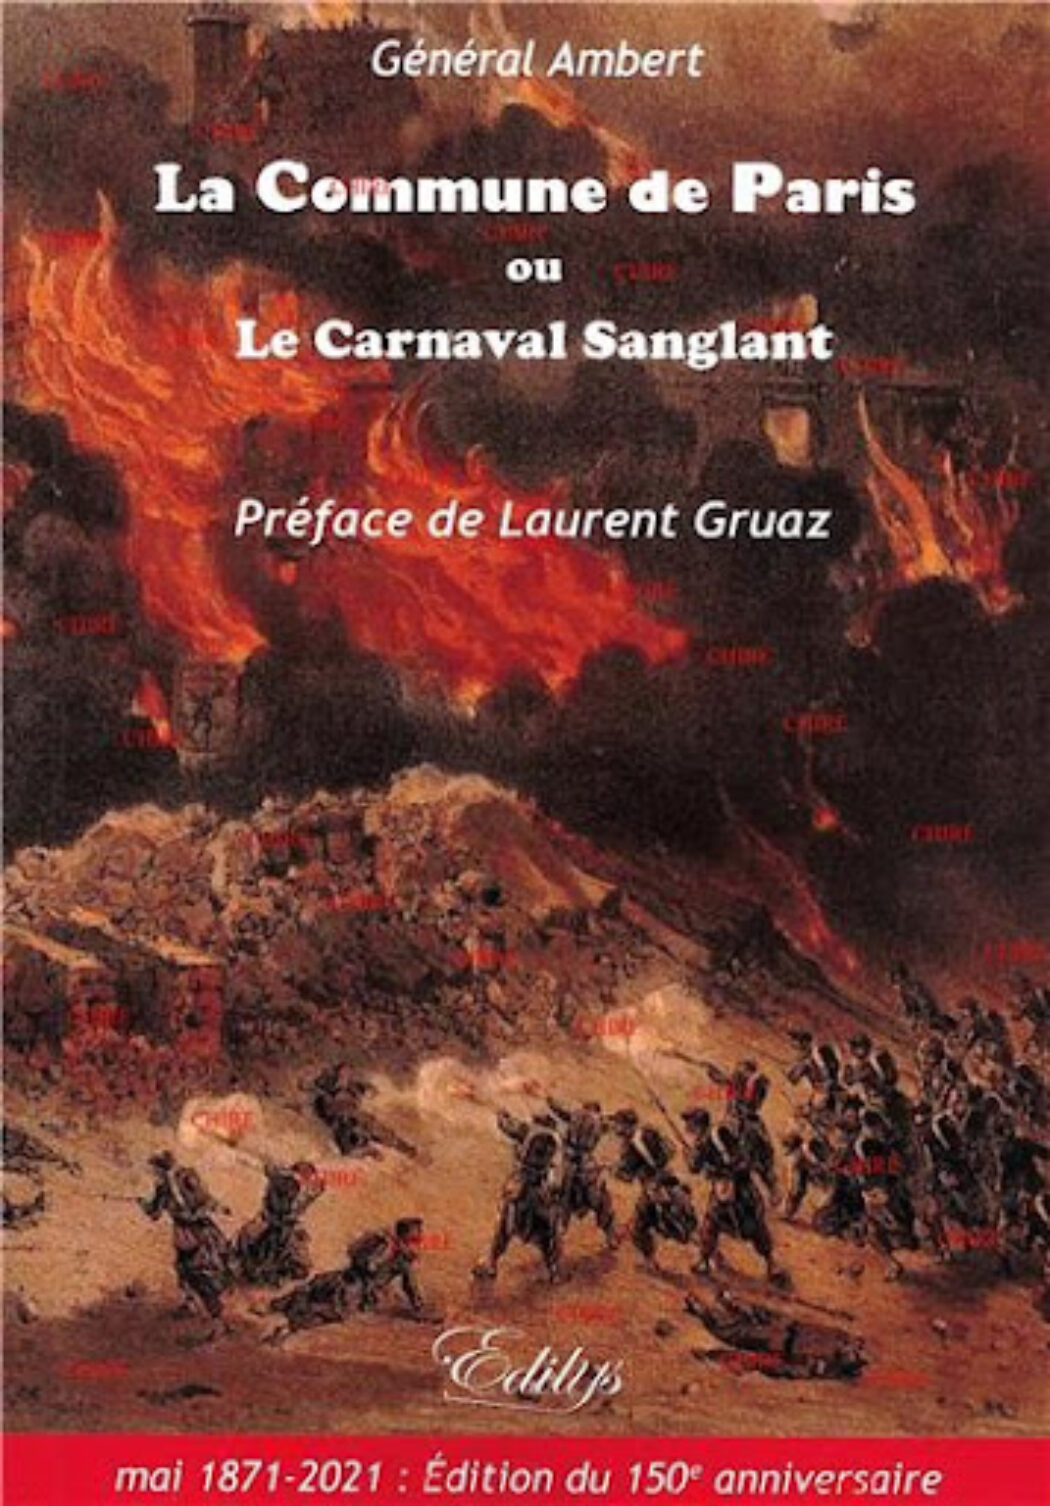 La Commune de Paris ou Le carnaval sanglant du Général Ambert